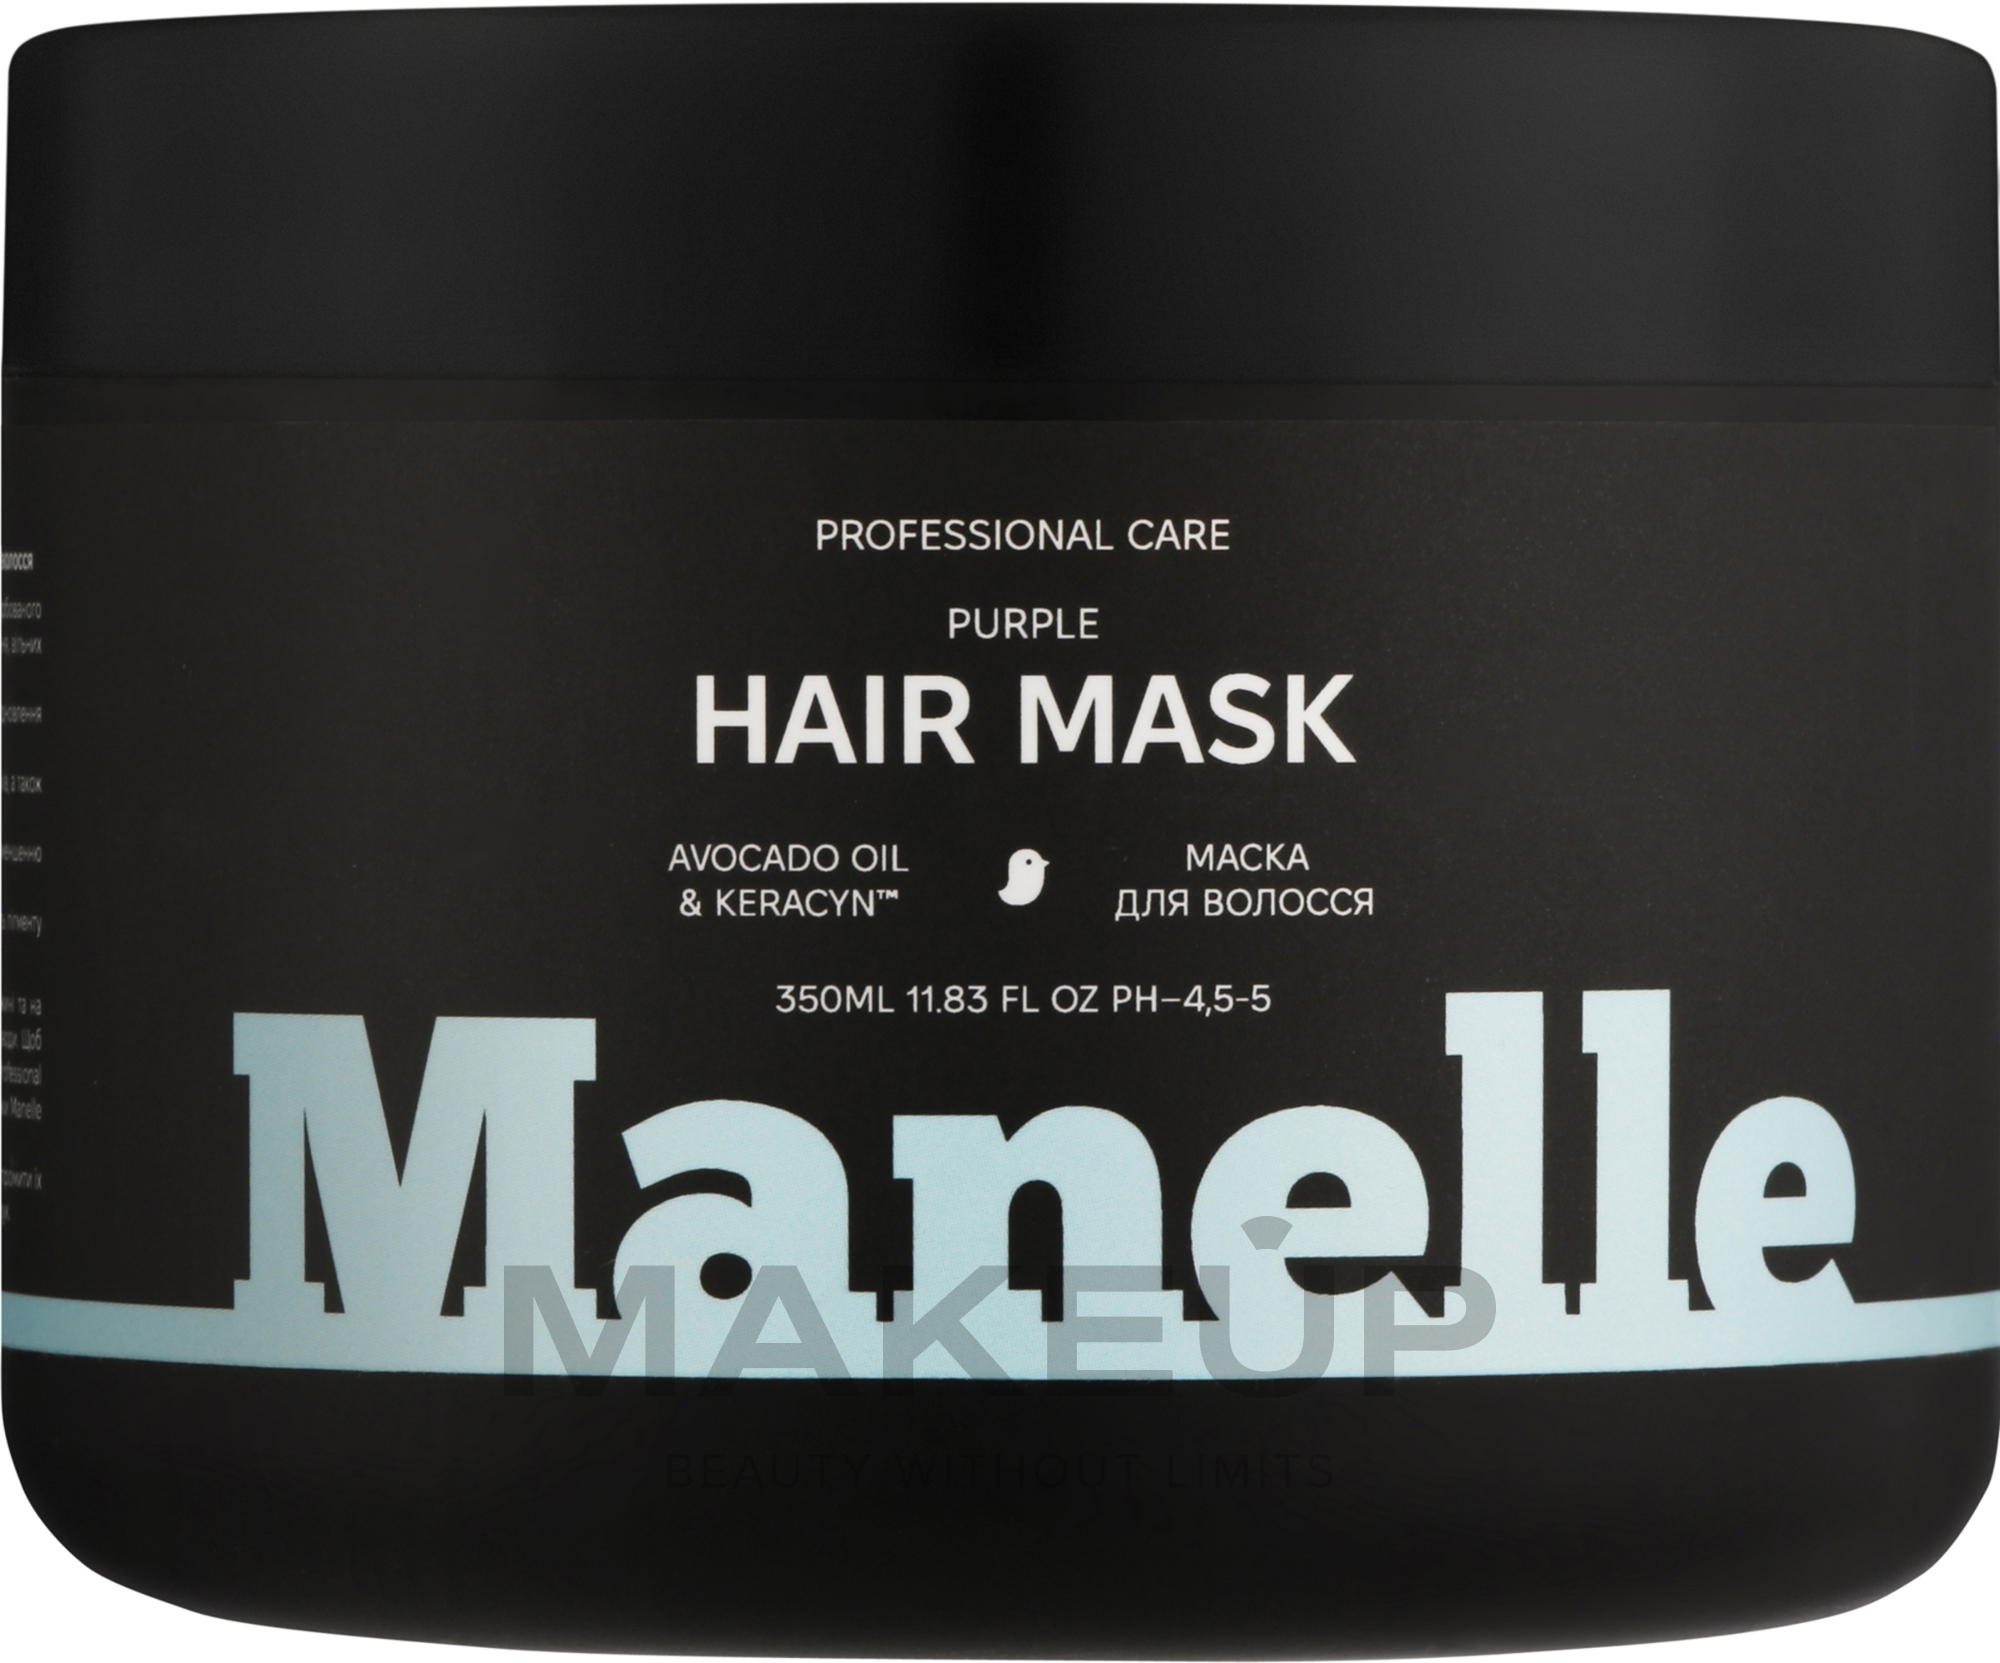 Тонирующая маска для нейтрализации желтизны светлых волос - Manelle Professional Care Avocado Oil & Keracyn Hair Mask — фото 350ml